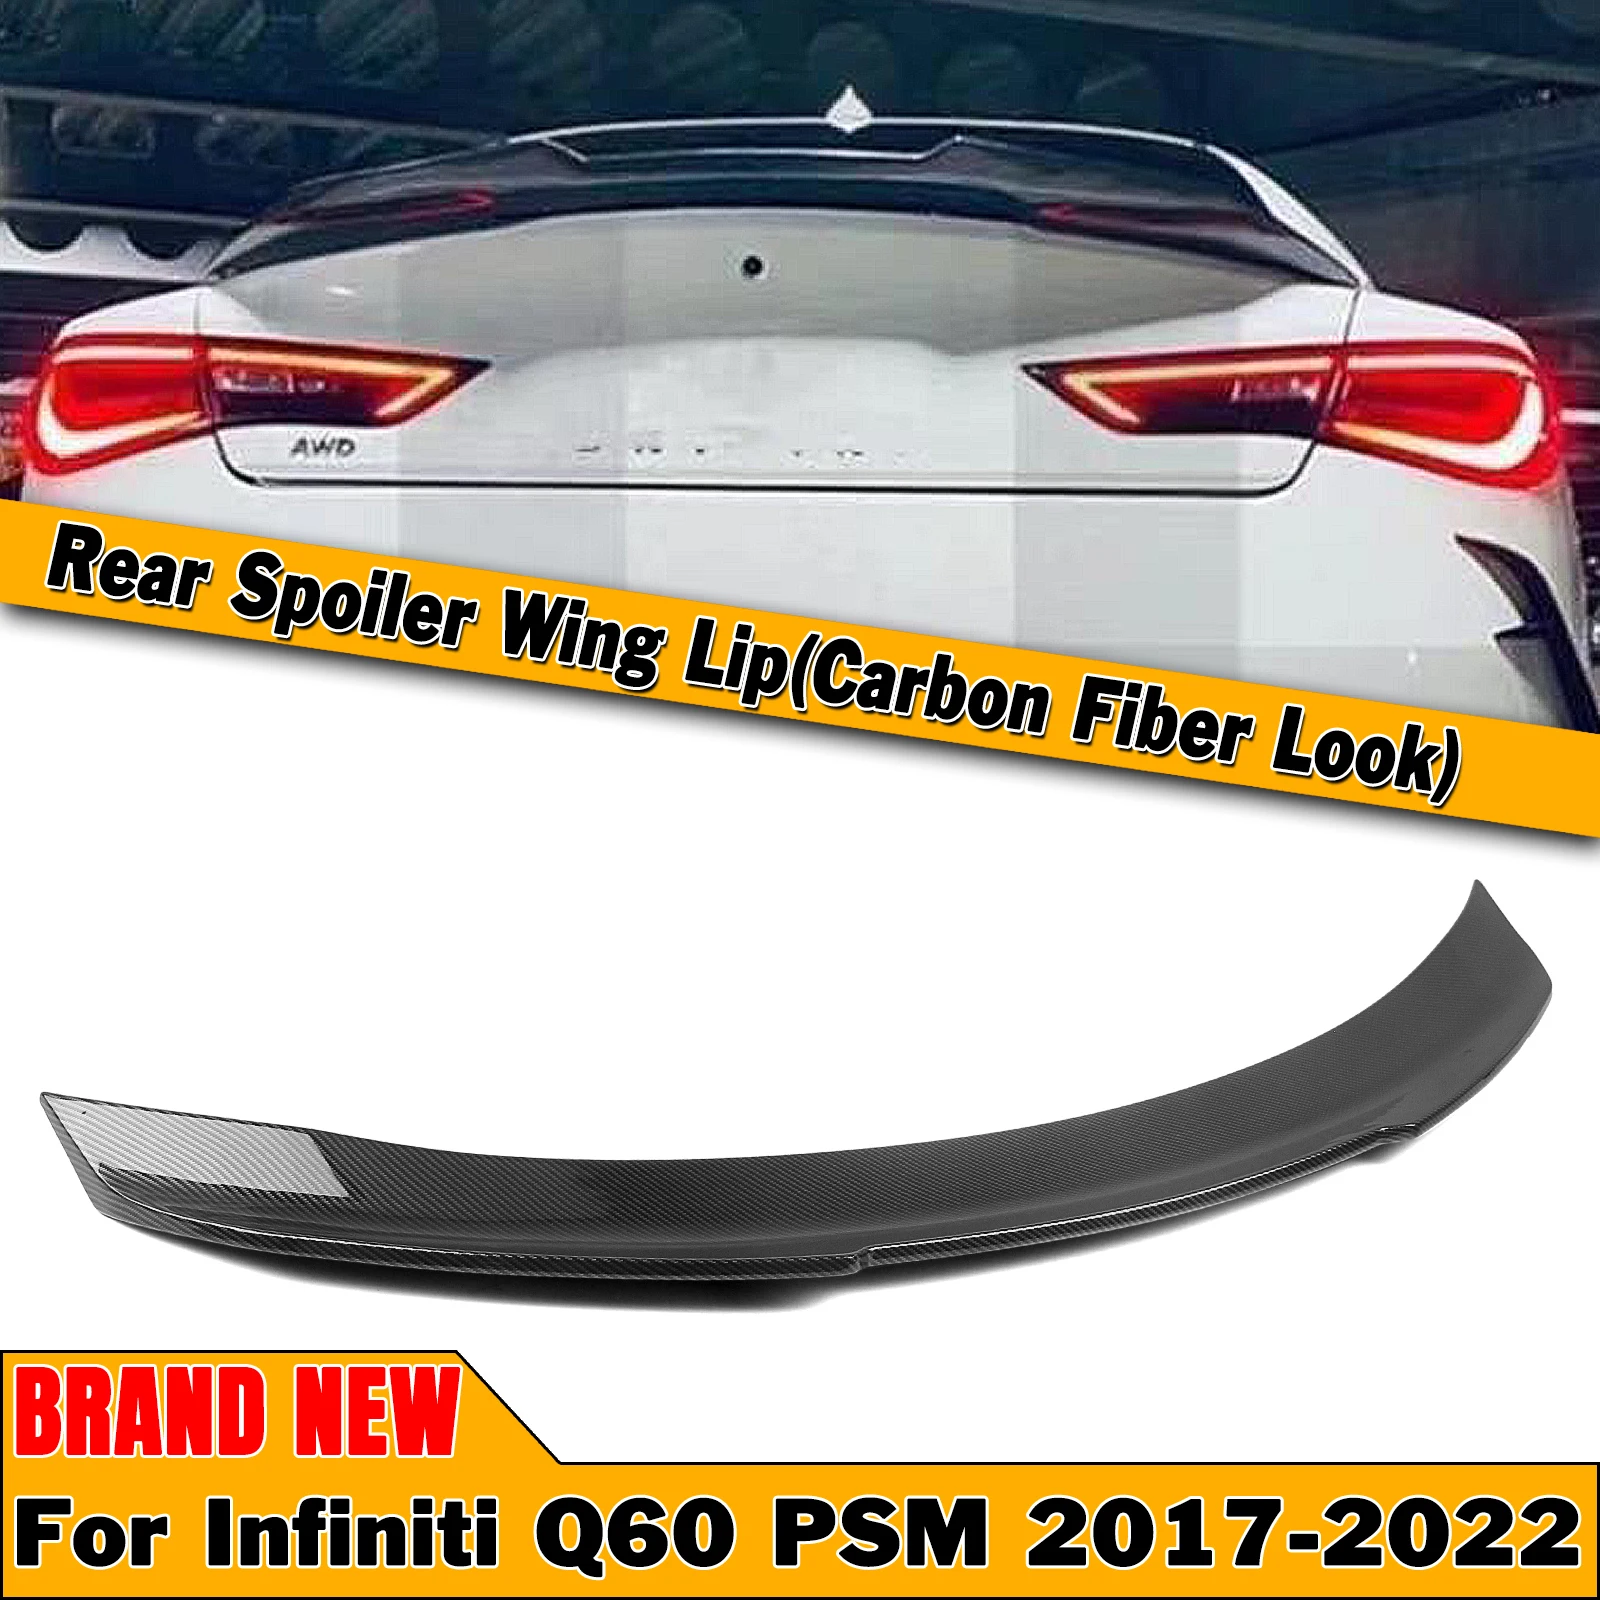 

Фонарь для Infiniti Q60 2017-2022, двухдверный купе, стиль PSM, из углеродного волокна